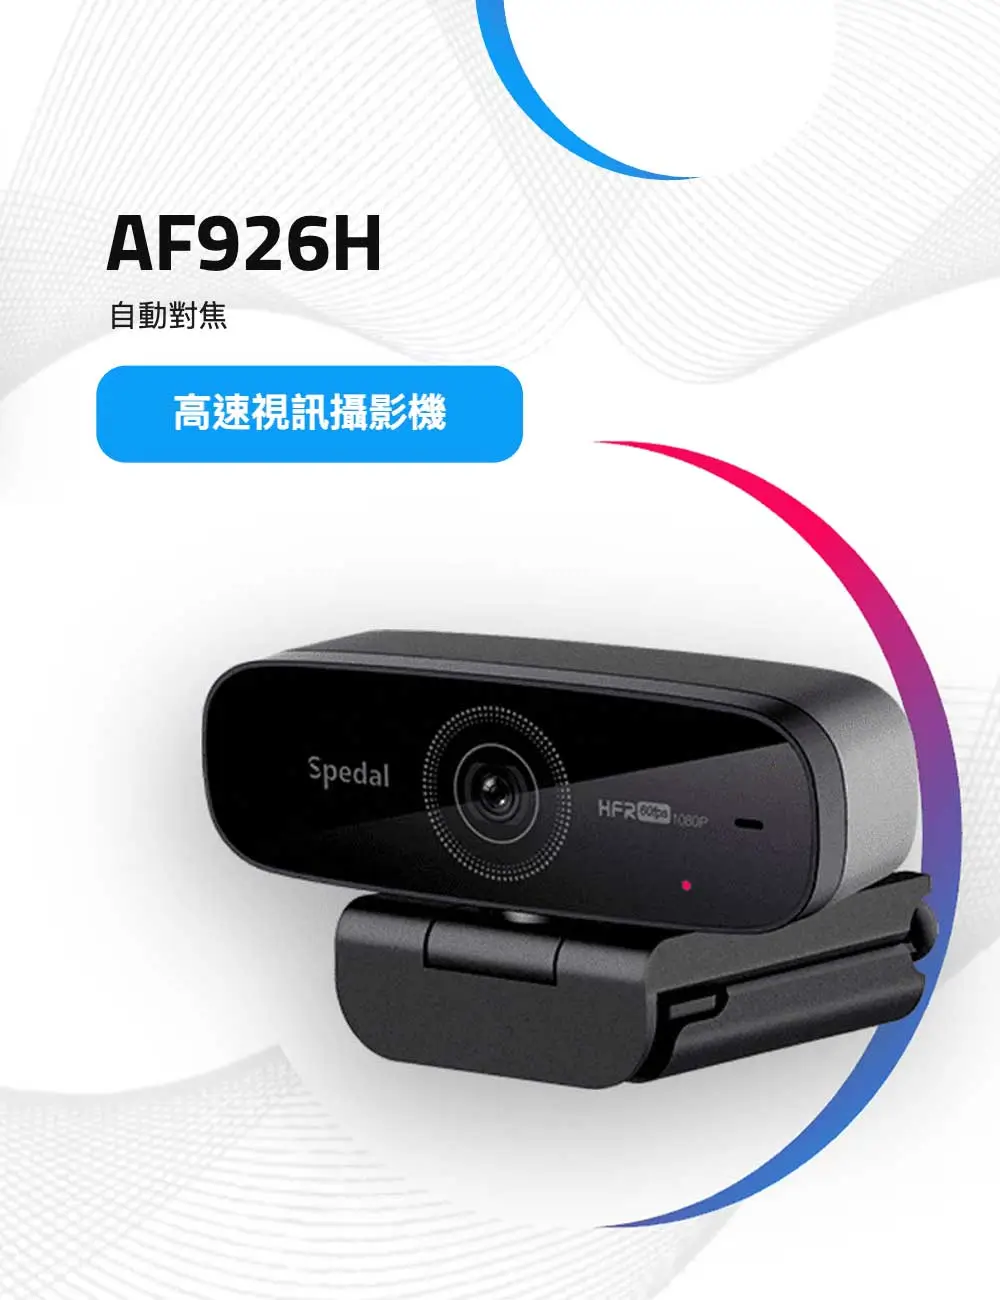 AF926H高幀數60FPS自動對焦視訊攝影機 